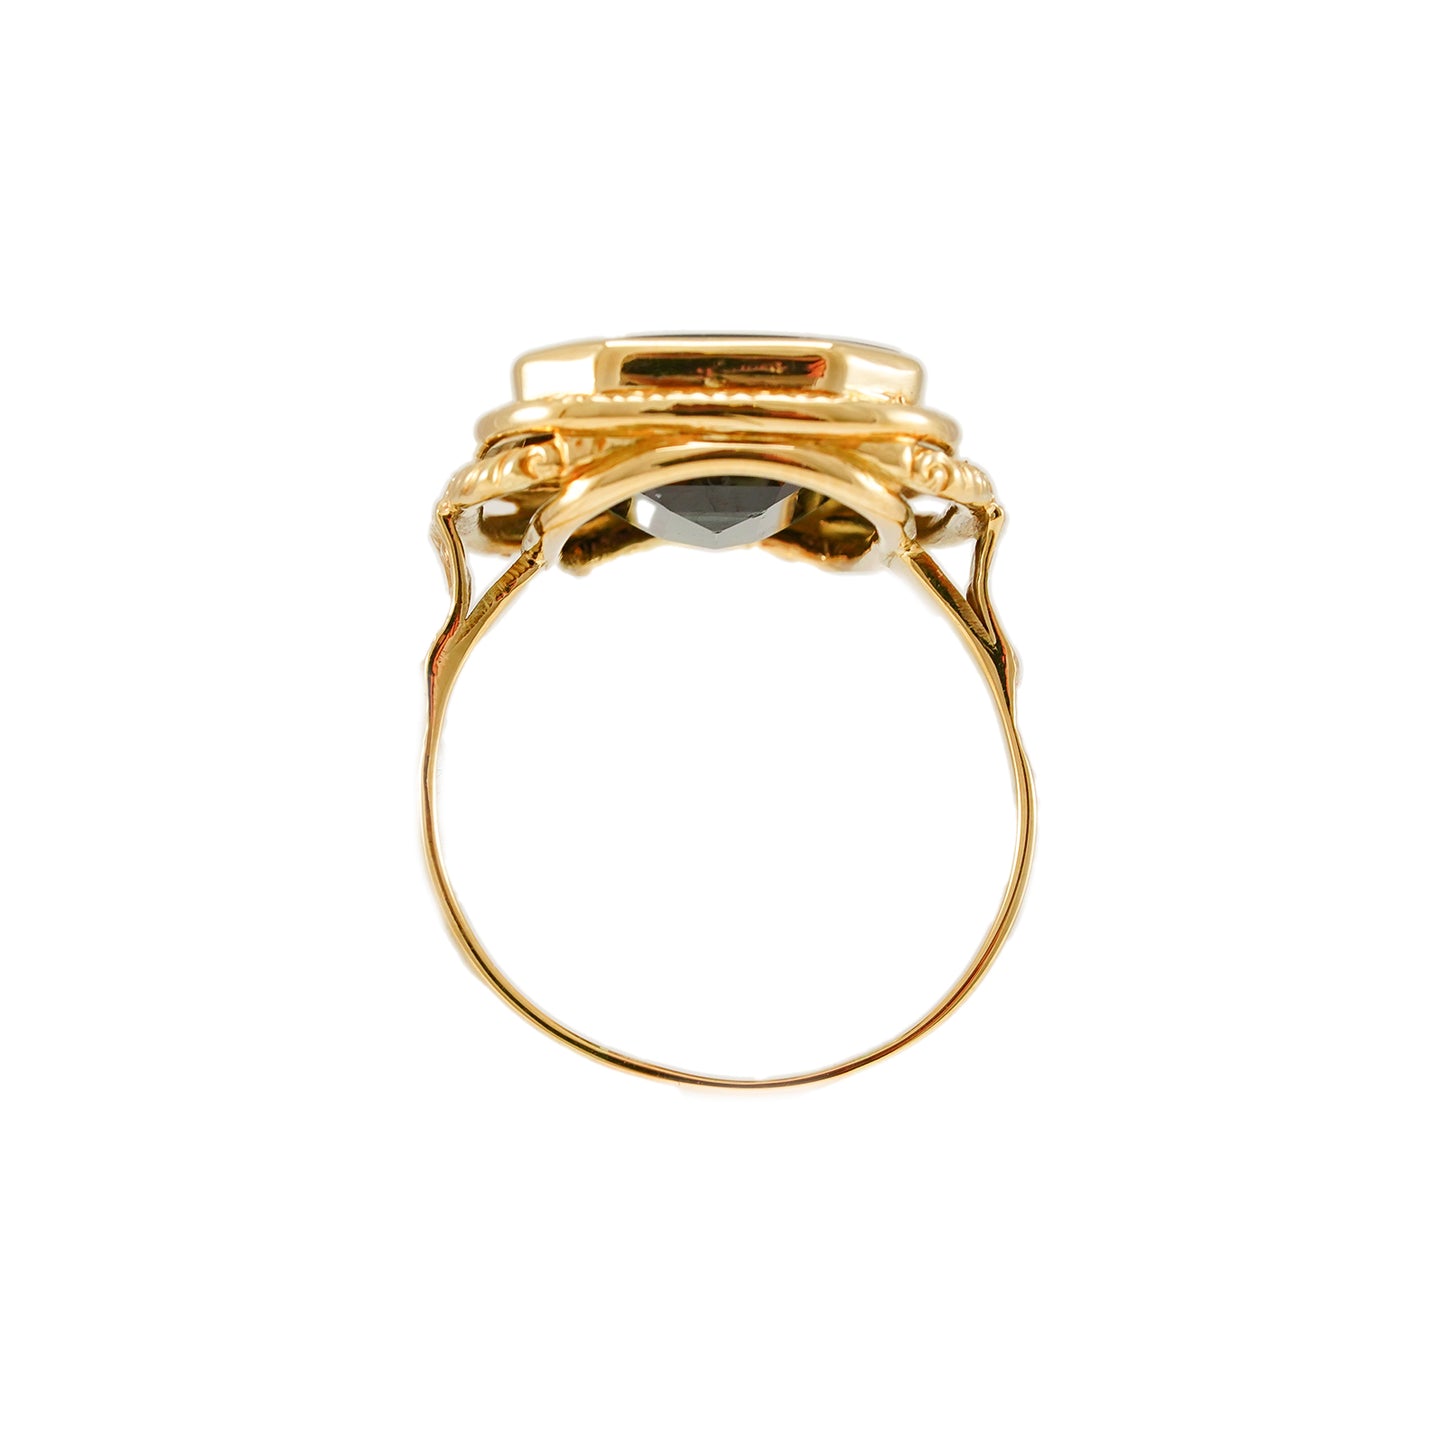 Vintage gemstone ring tourmaline yellow gold 14K men's jewelry men's ring gold ring